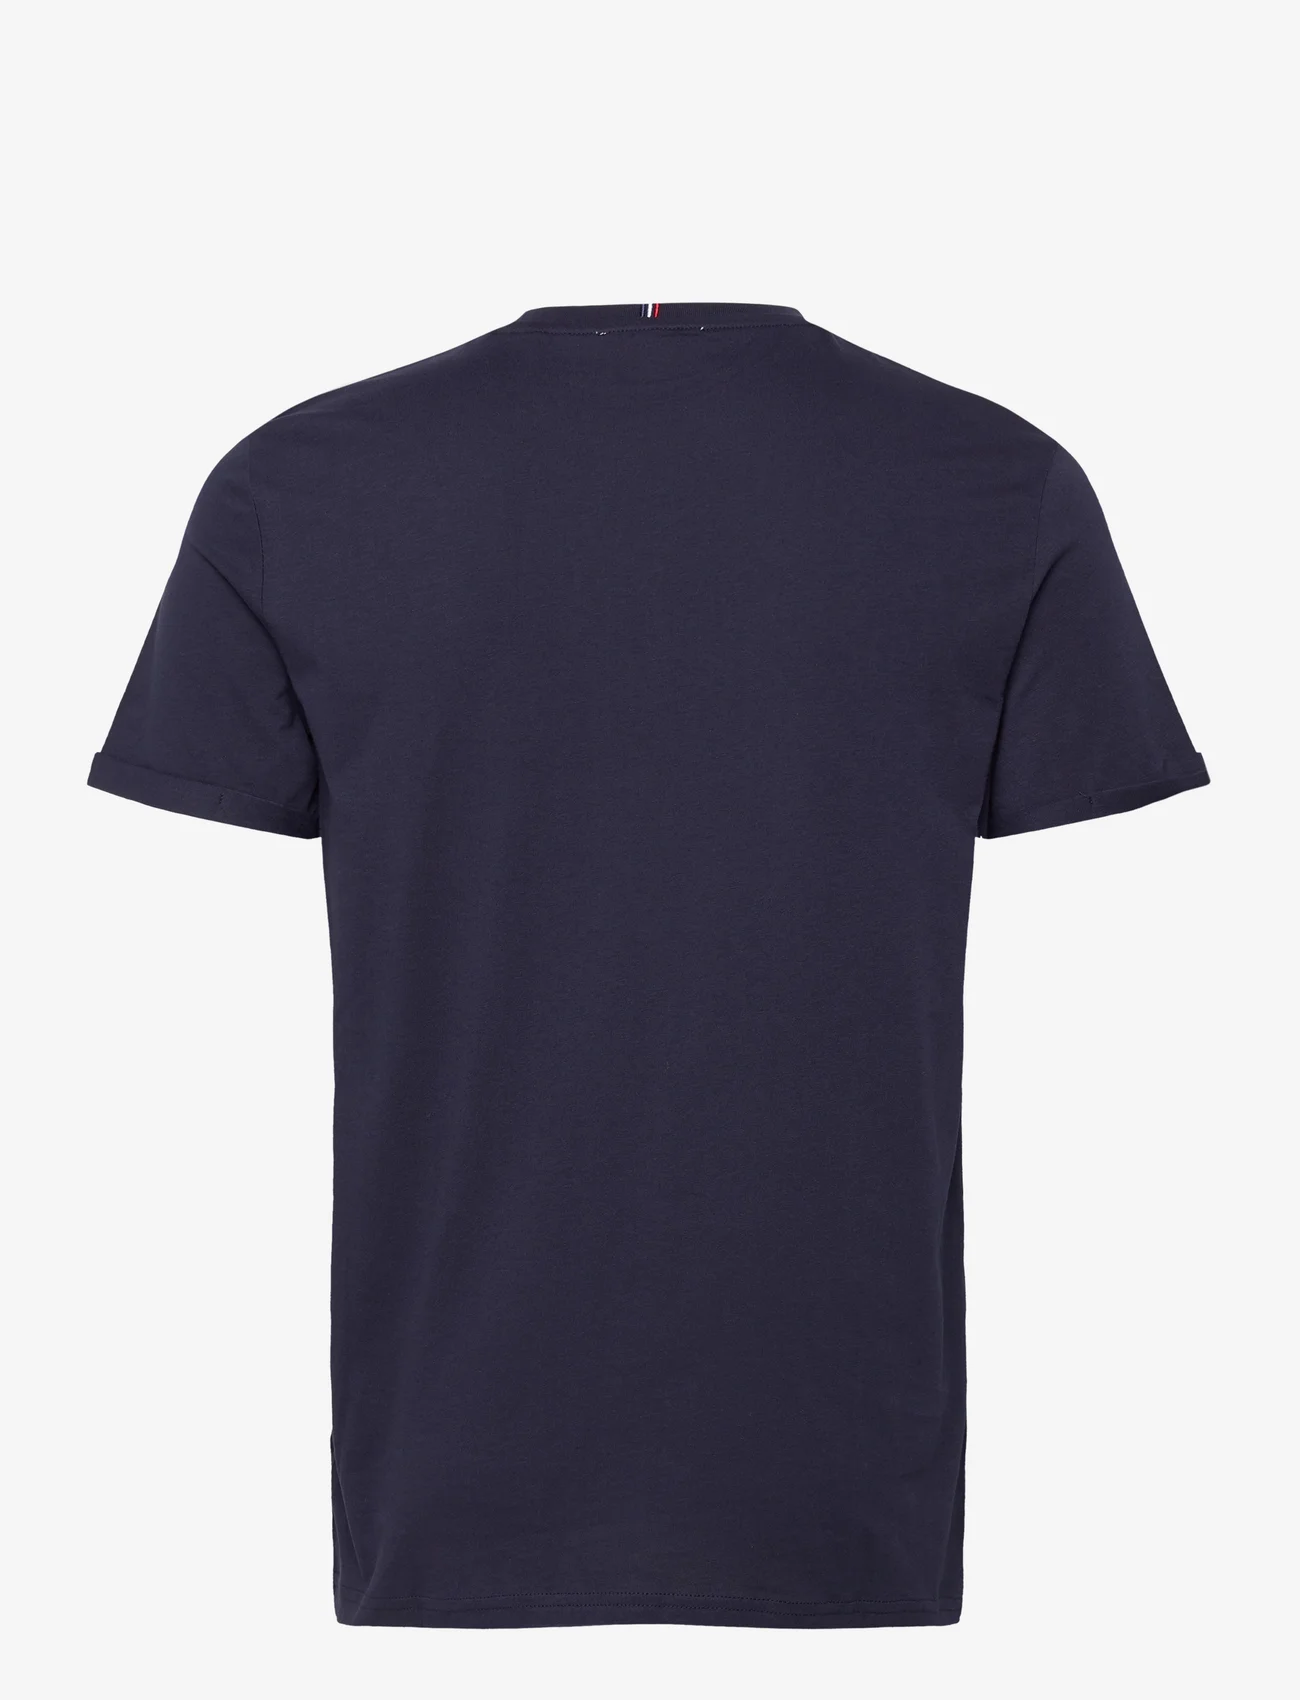 Les Deux - Les Deux II T-Shirt 2.0 - korte mouwen - dark navy/platinum - 1